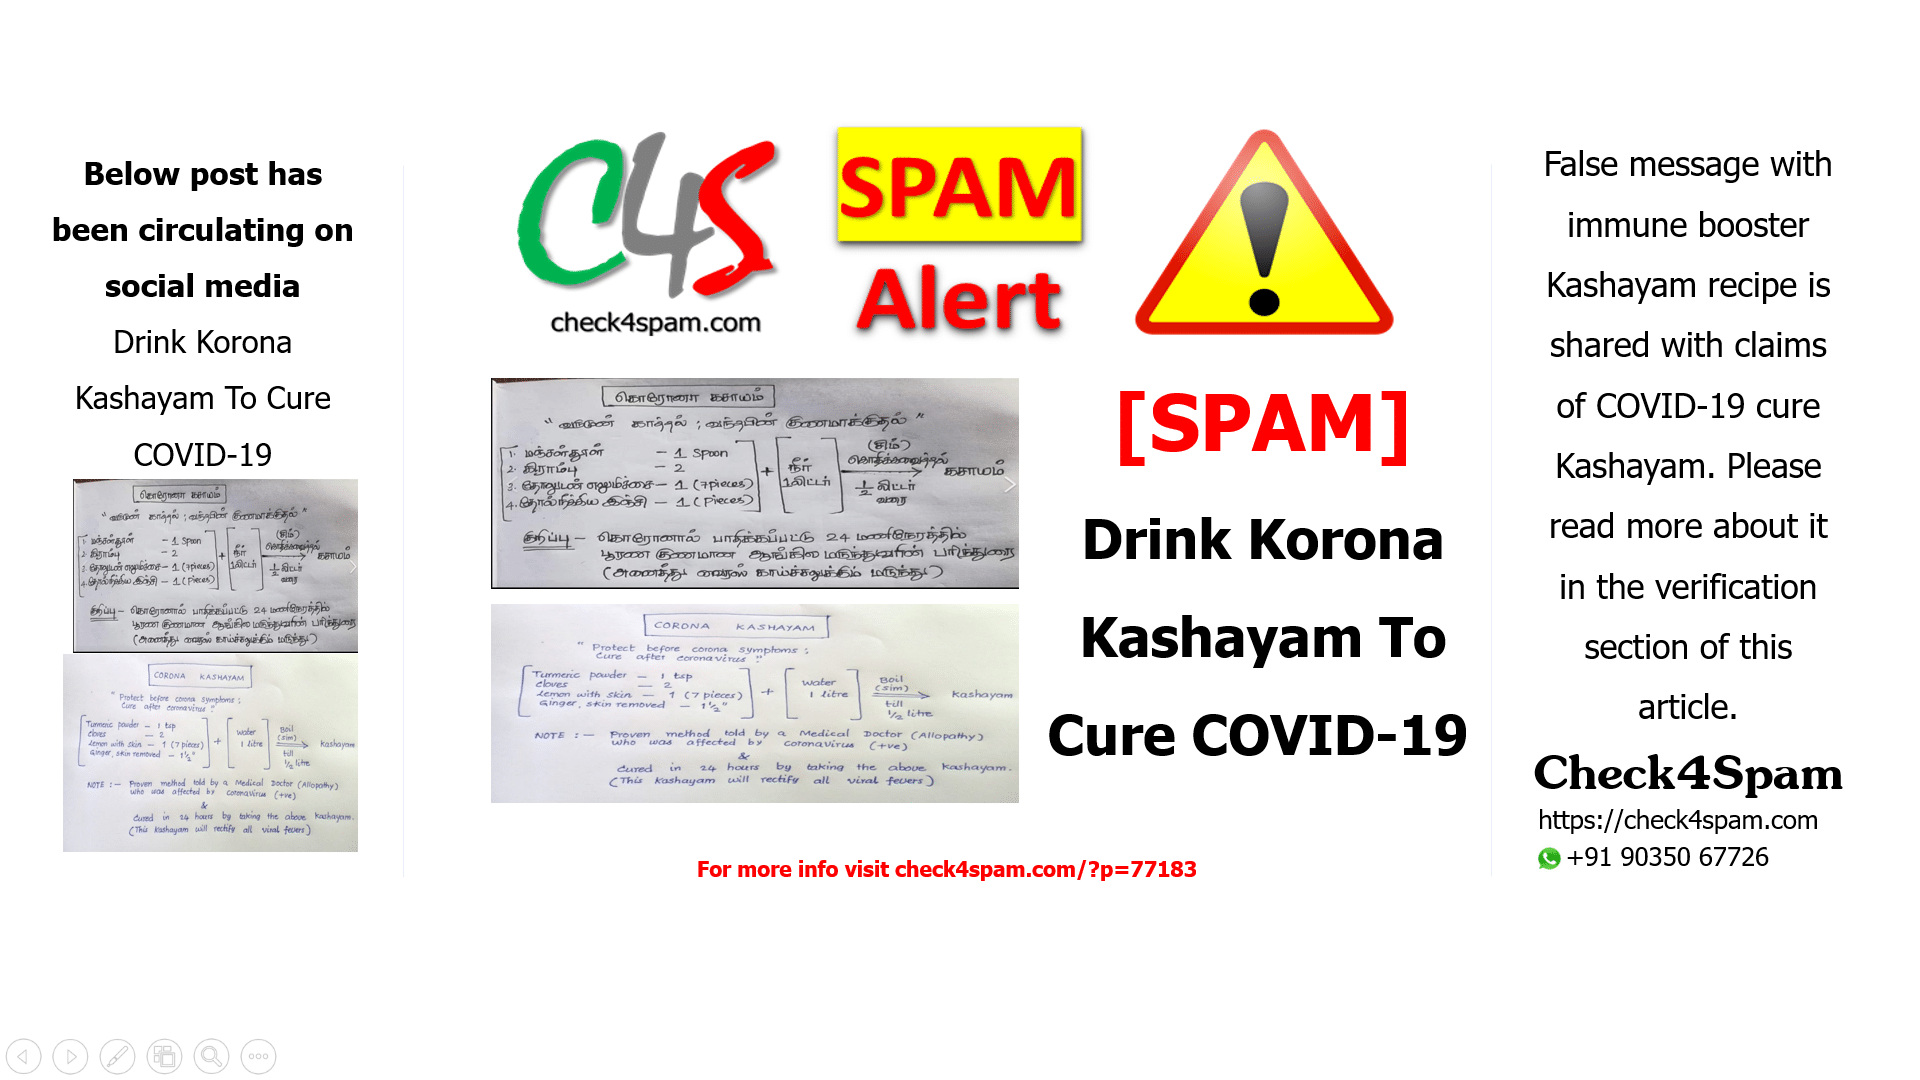 Drink Korona Kashayam To Cure COVID-19